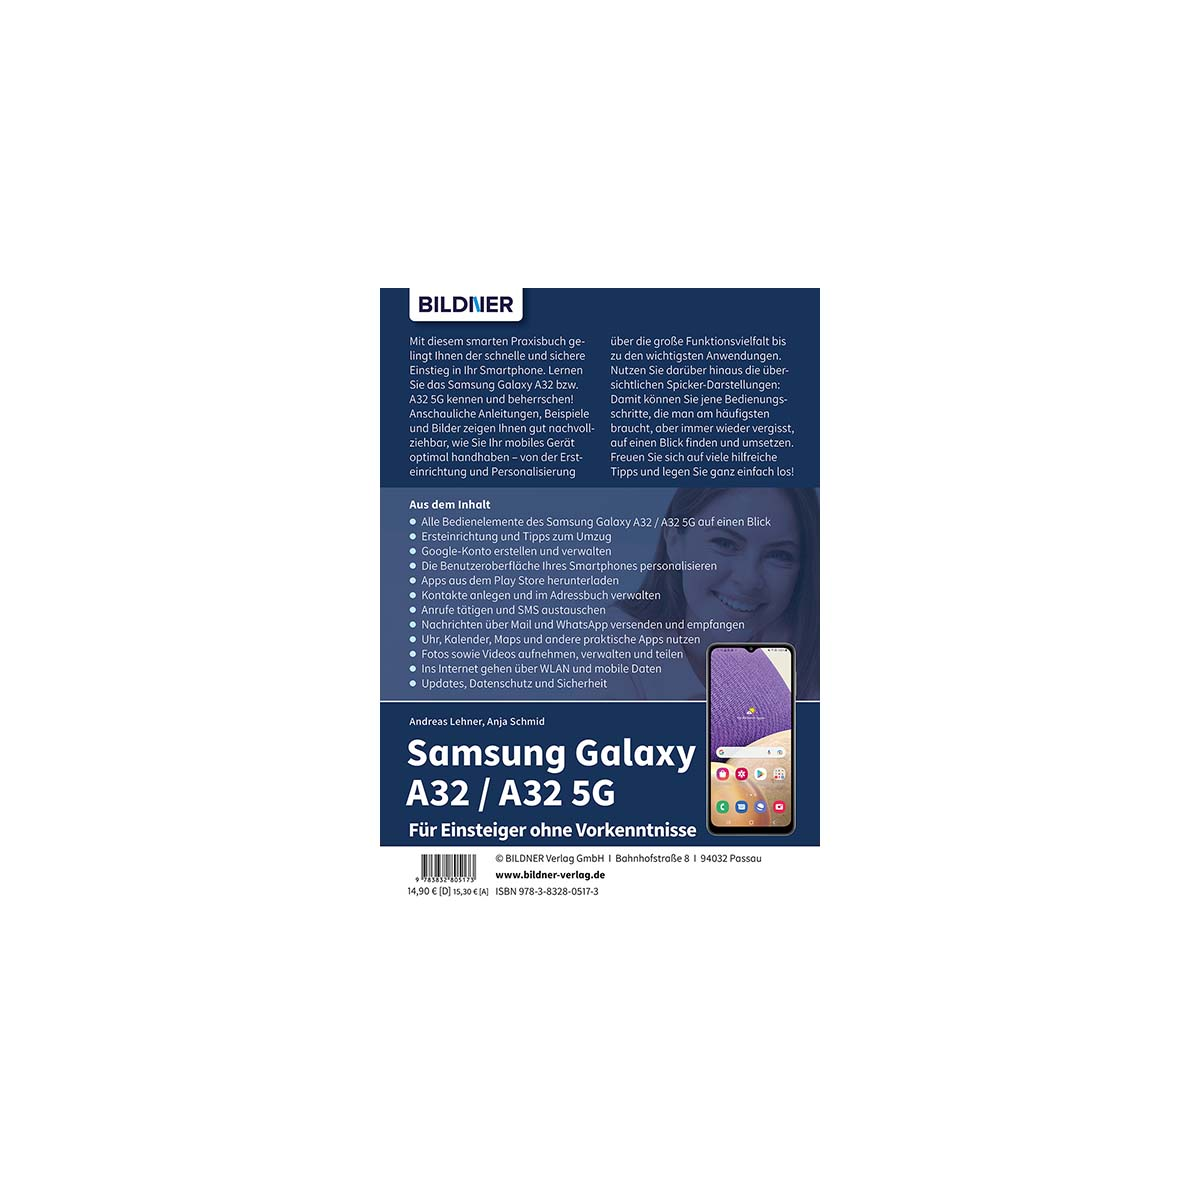 Samsung Galaxy A32 Vorkenntnisse / 5G - ohne A32 Für Einsteiger